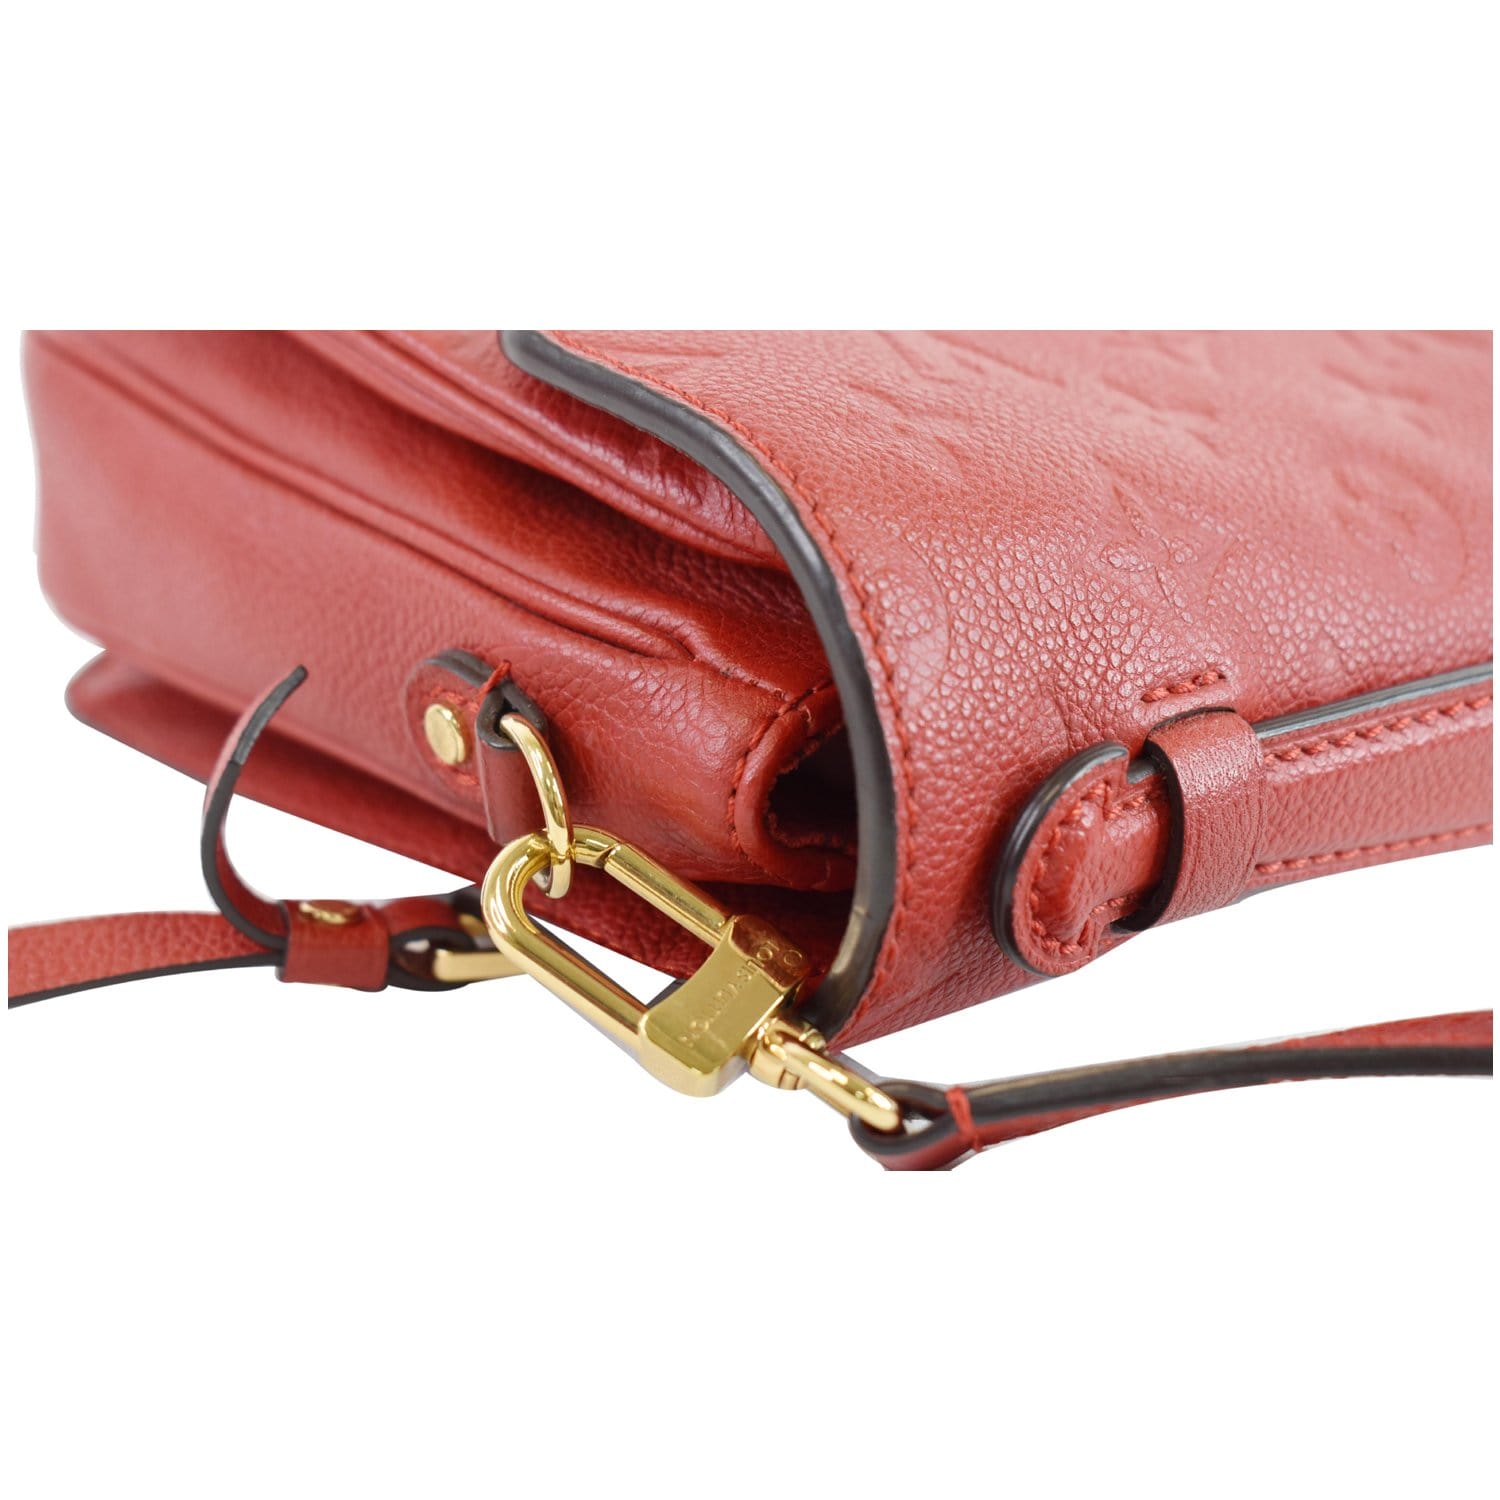 Louis Vuitton Pochette Métis Empreinte Cerise Red Leather Cross Body Bag -  Ideal Luxury